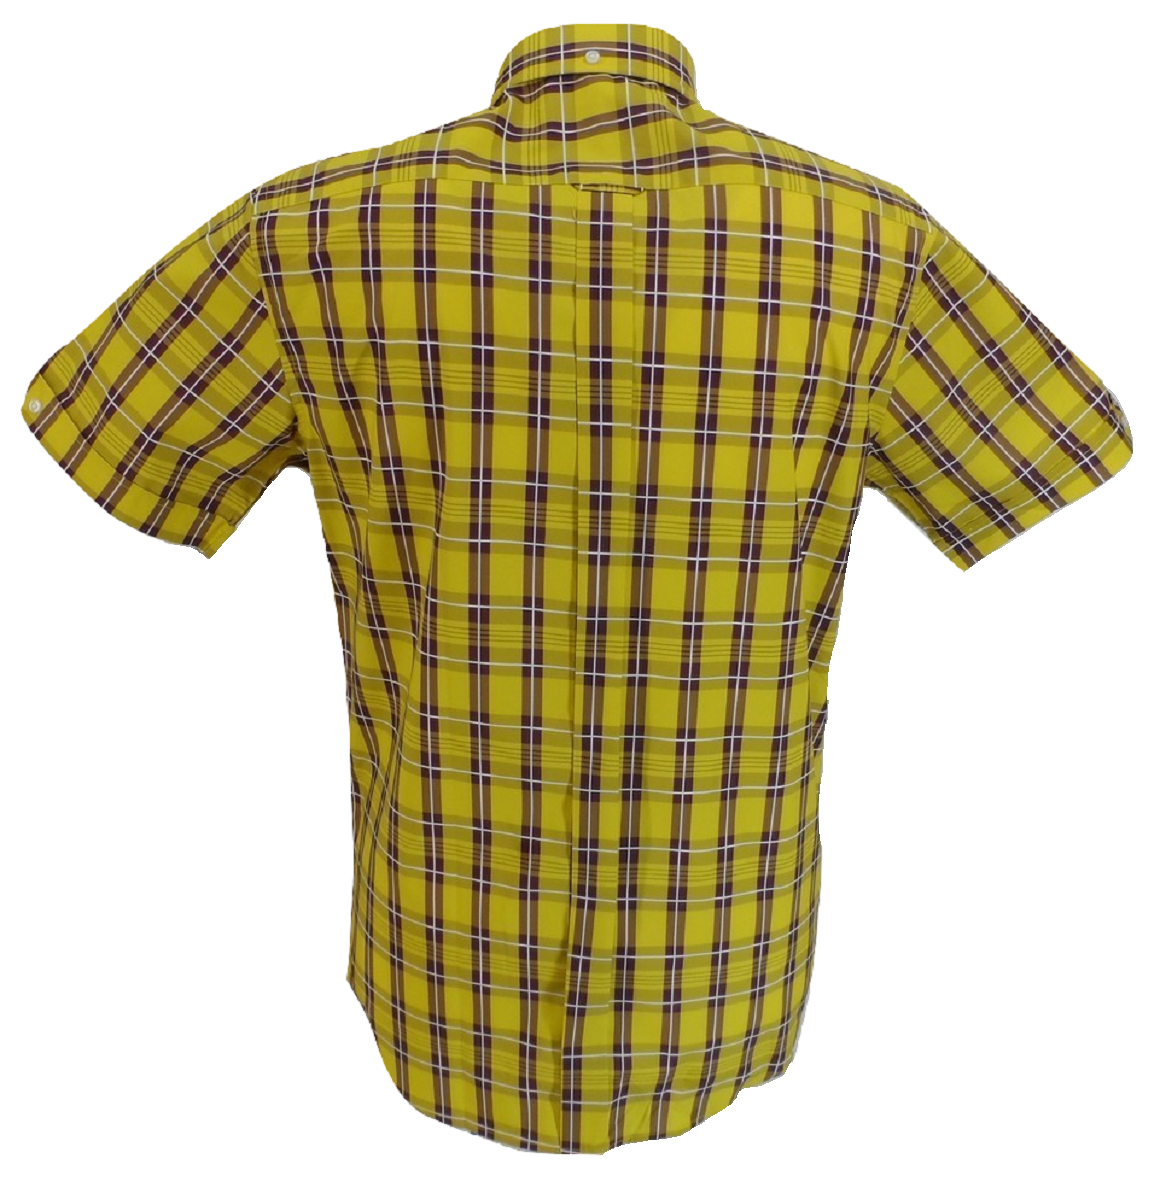 Mazeys Chemises à manches courtes 100 % coton à carreaux jaunes et sang de bœuf pour homme